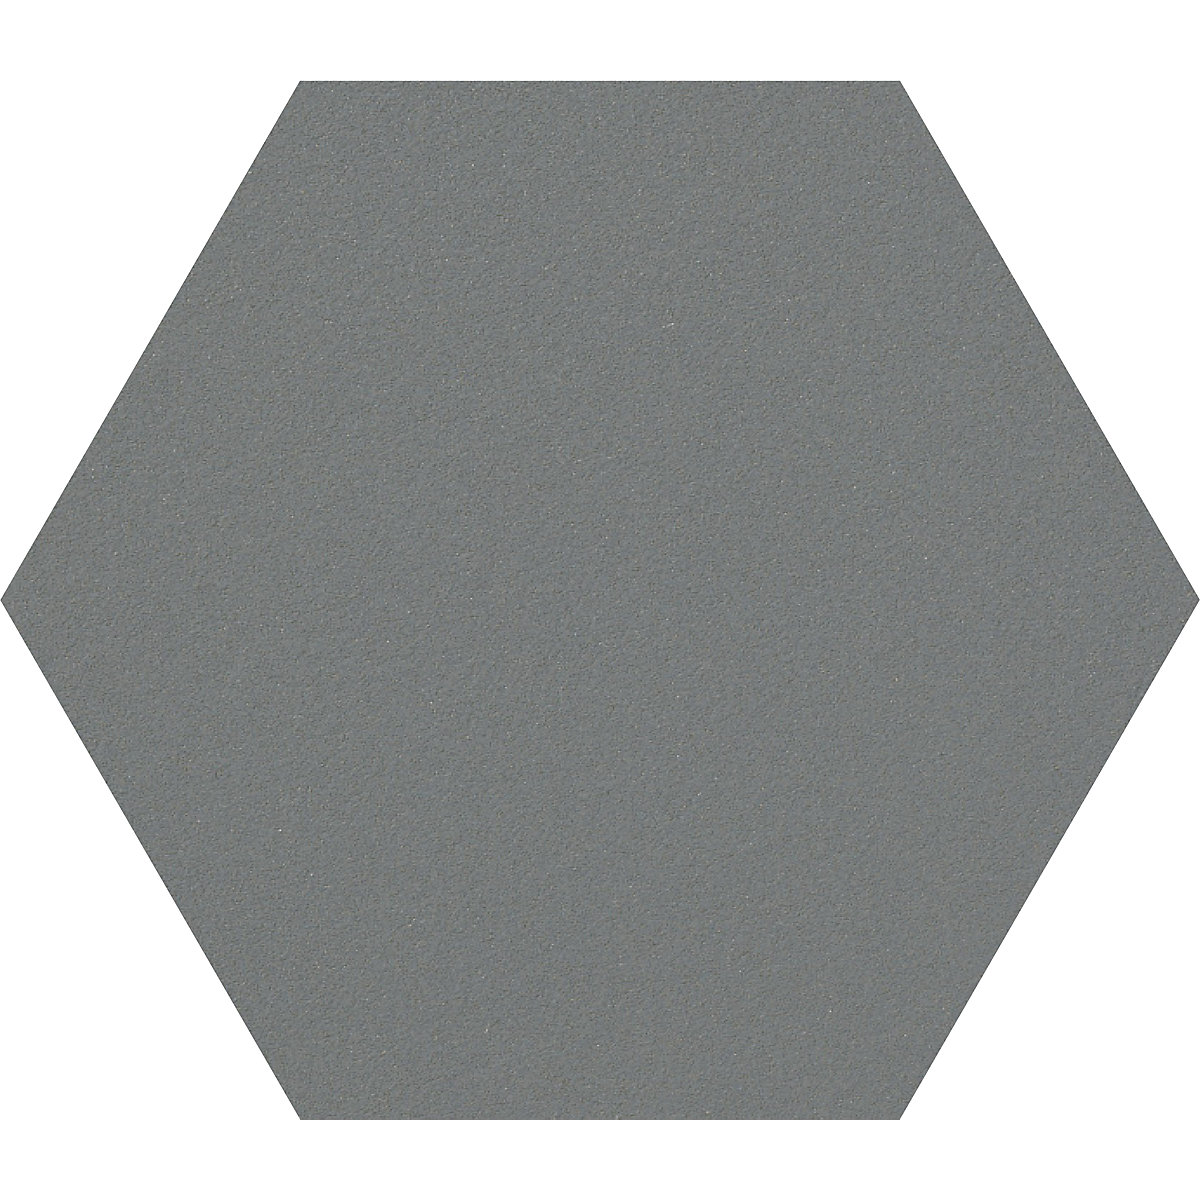 Tableau à épingles design hexagonal – Chameleon, liège, l x h 600 x 600 mm, gris foncé-30